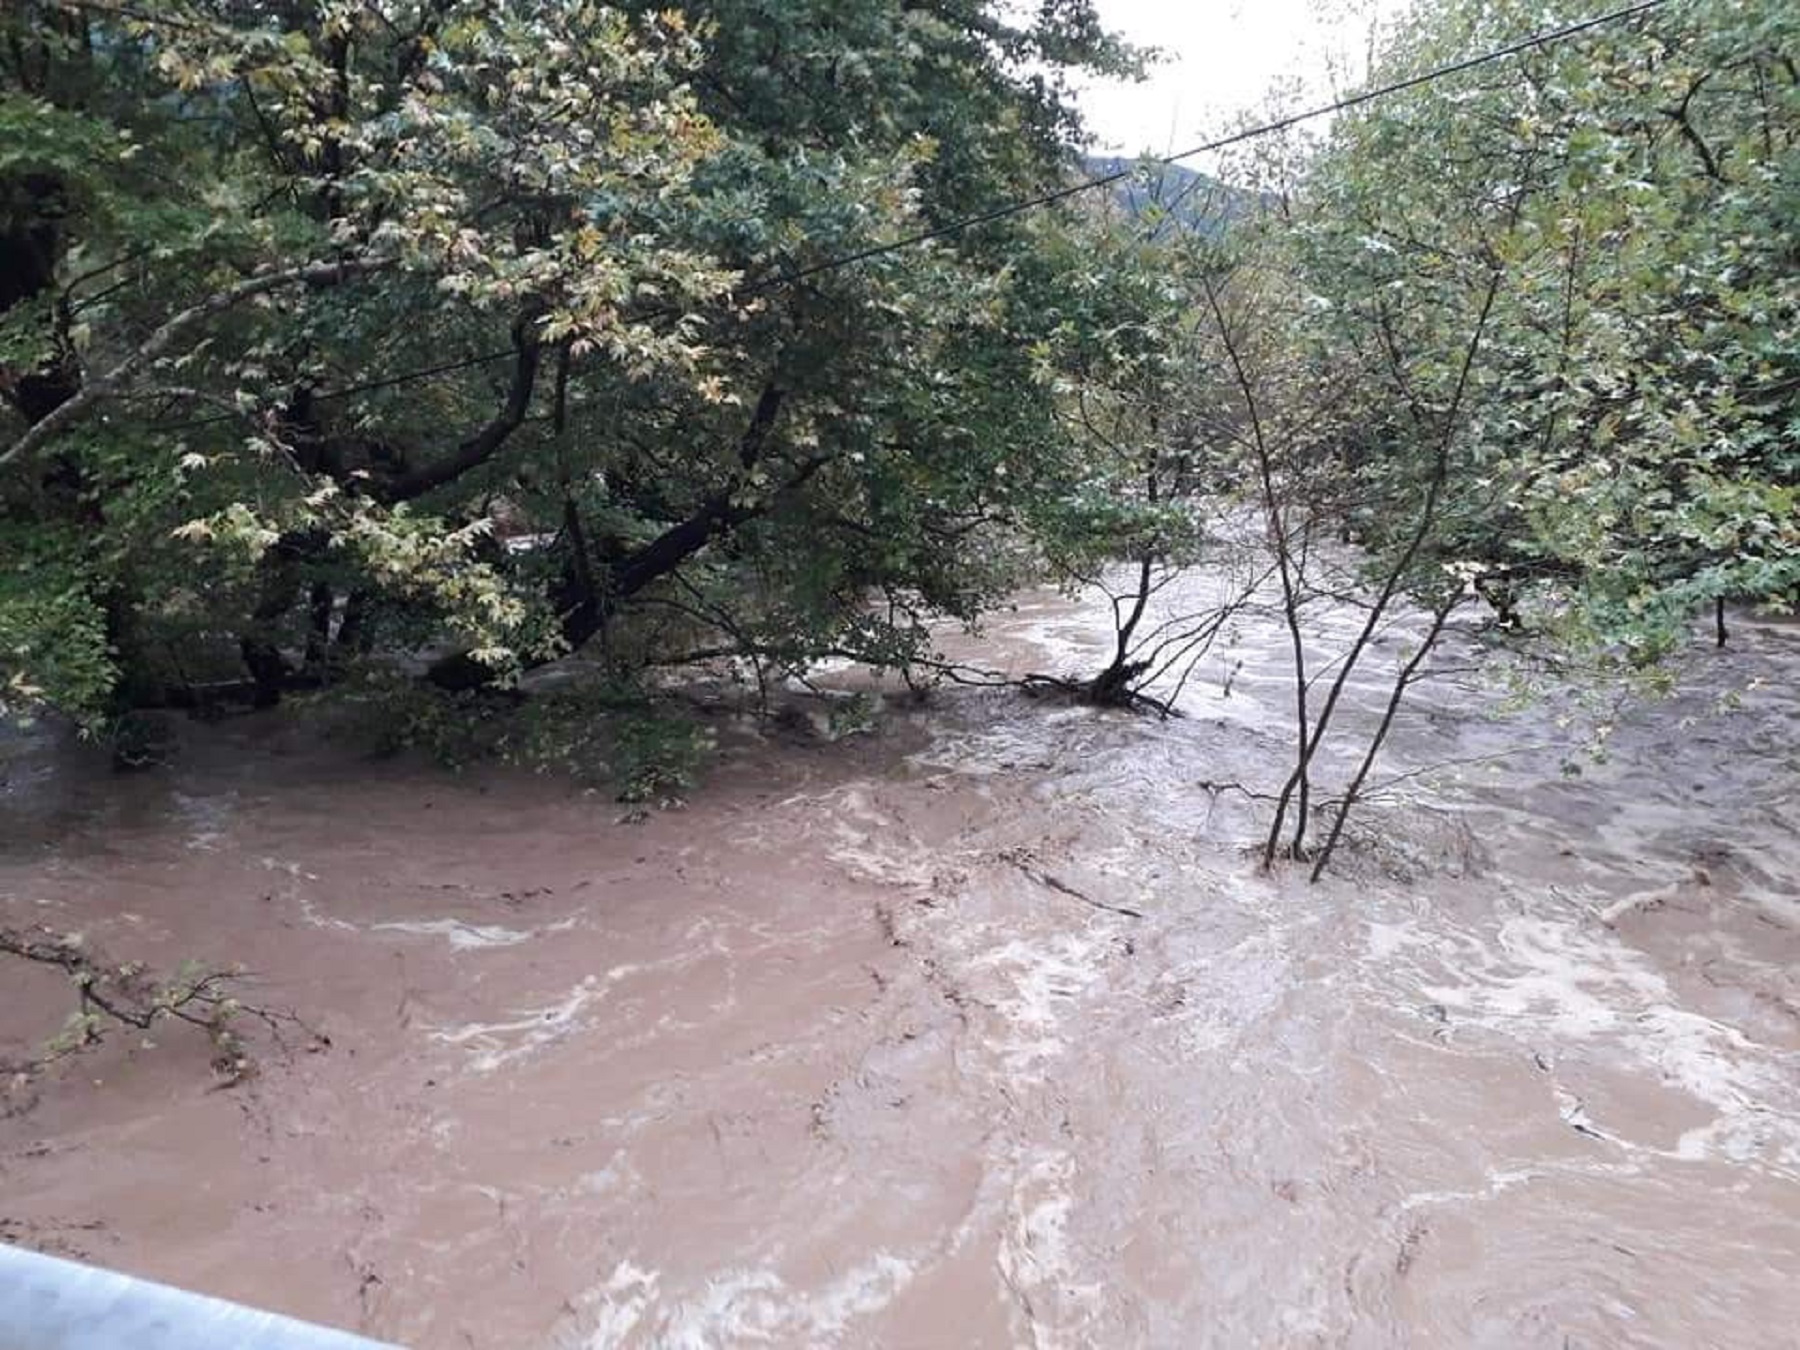 اخبار اليونان - أمطار غزيرة في إبيروس وثيساليا وفي ثسبروتيا ، نهرا كالاماس وأشيرون على وشك إغراق المحاصيل "فيديو"